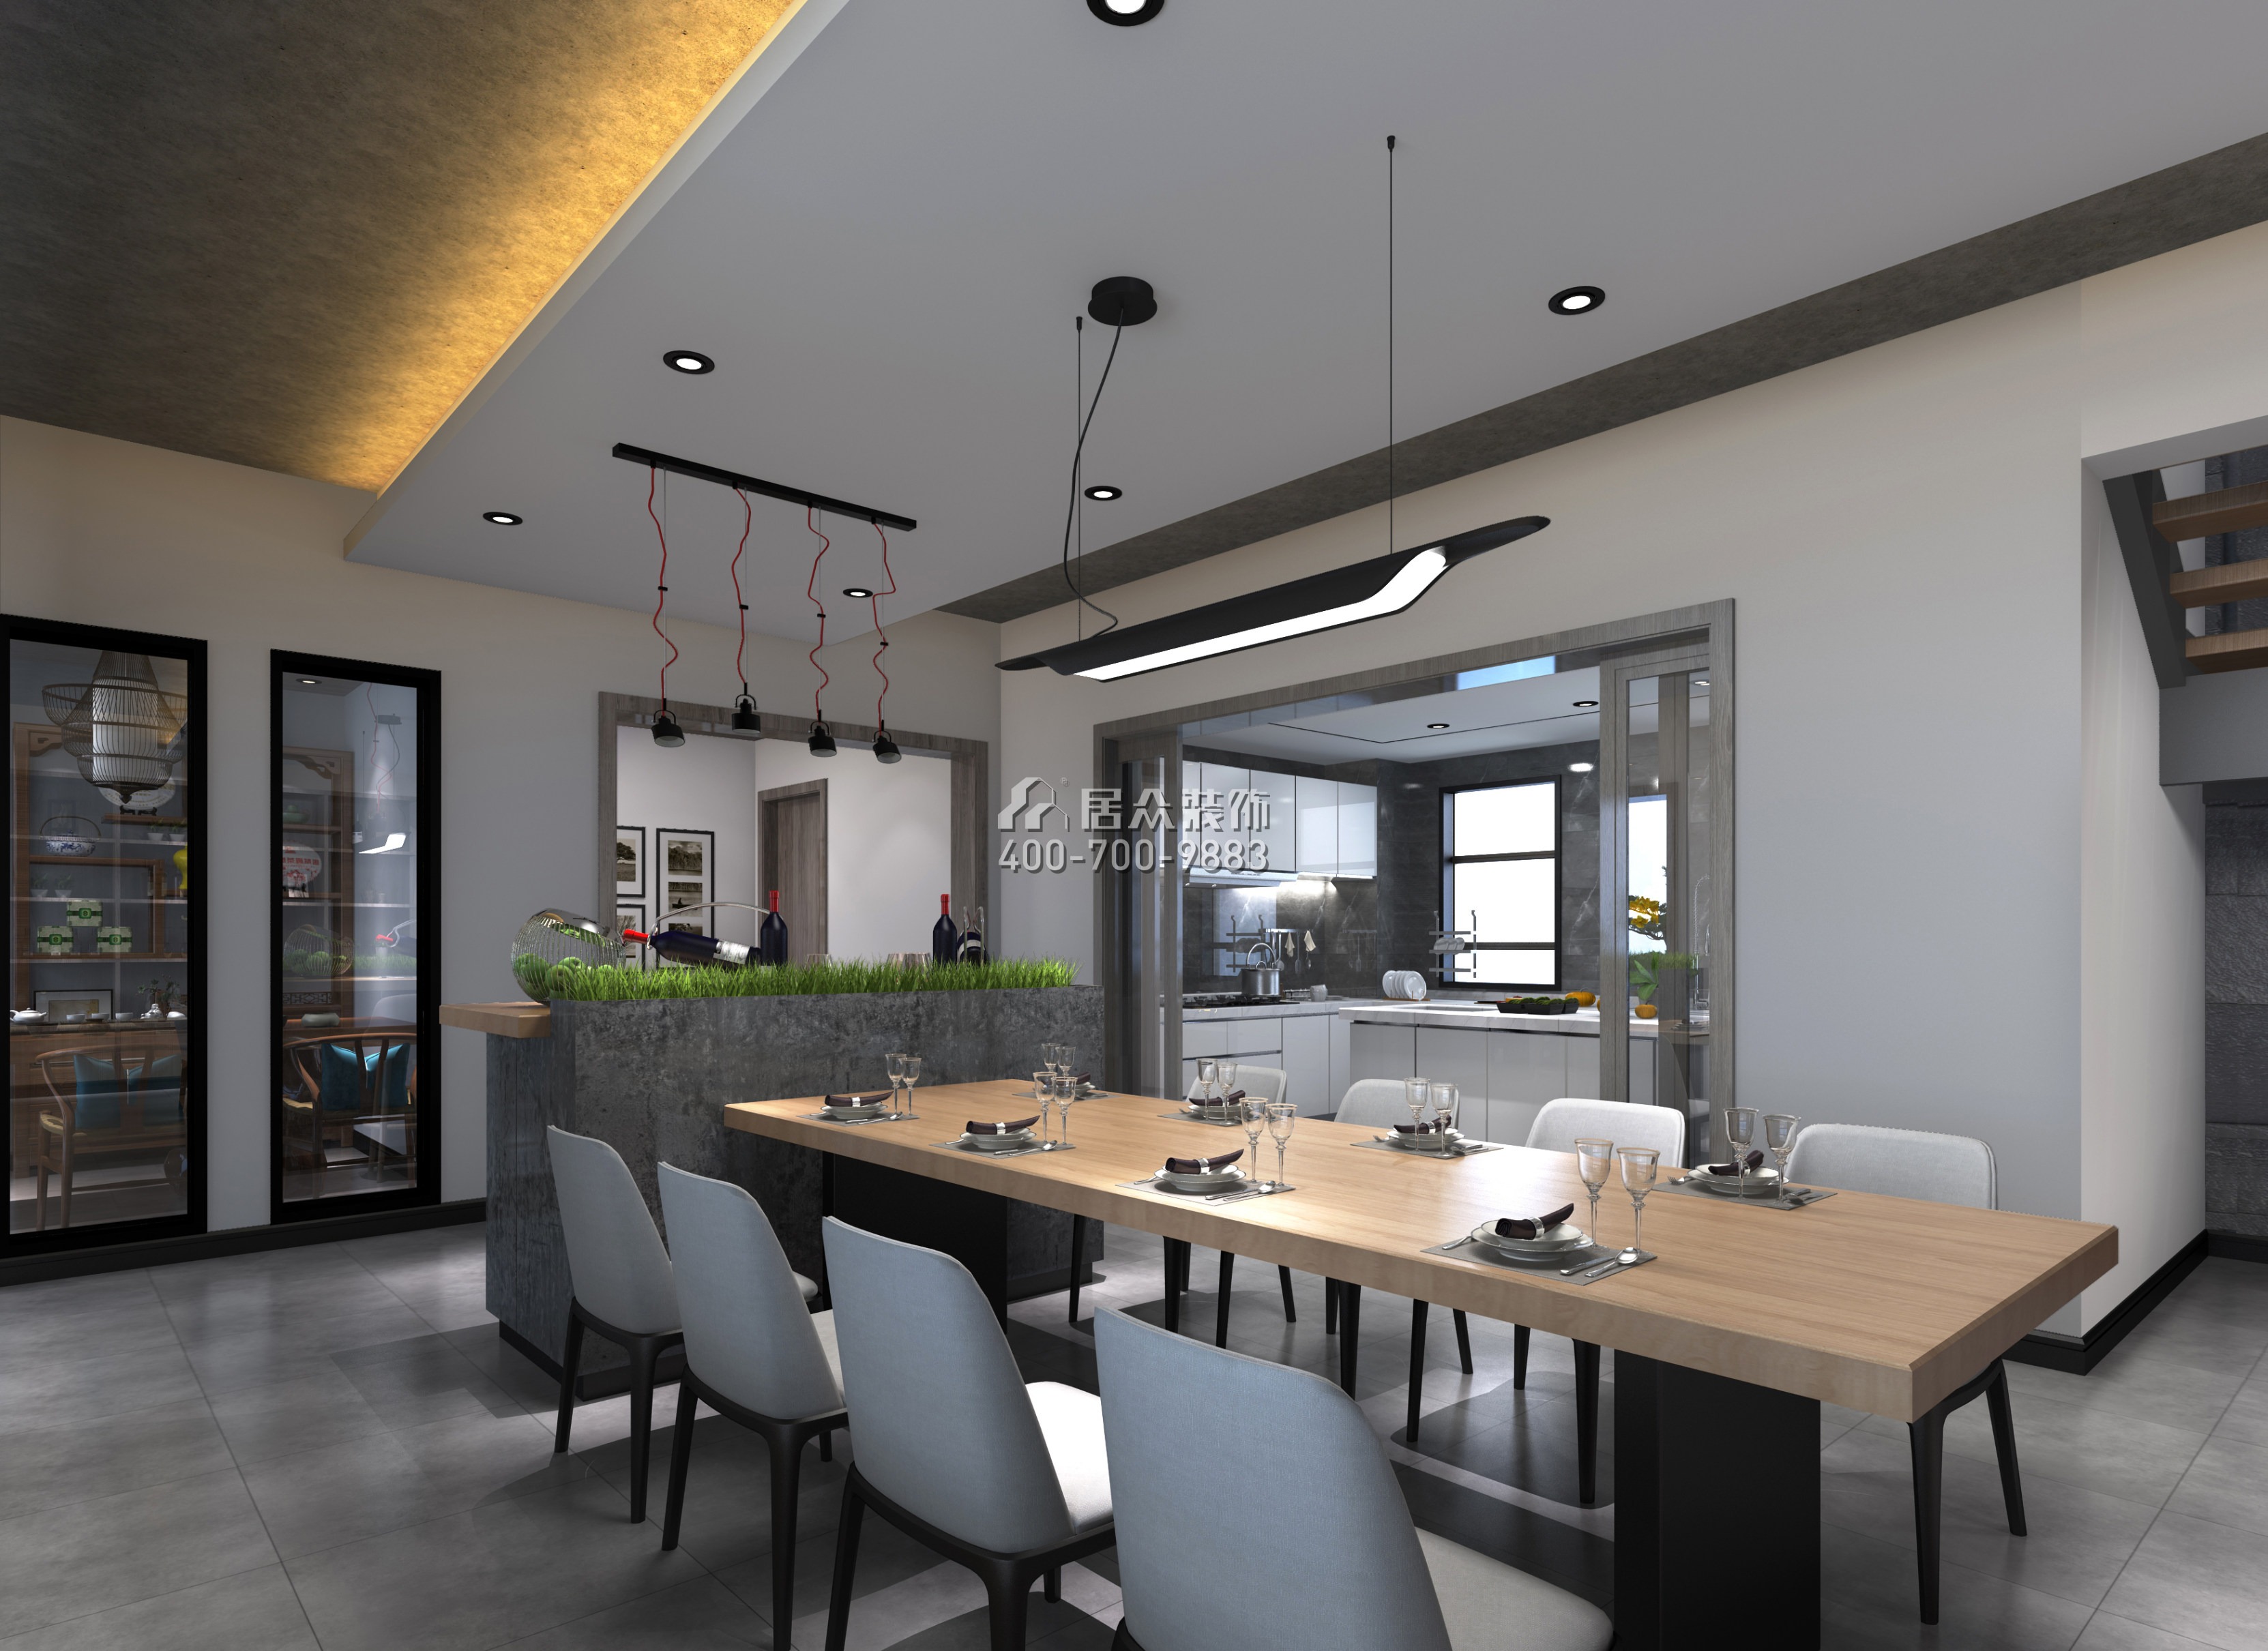 月瓏灣豪庭270平方米現代簡約風格復式戶型餐廳裝修效果圖